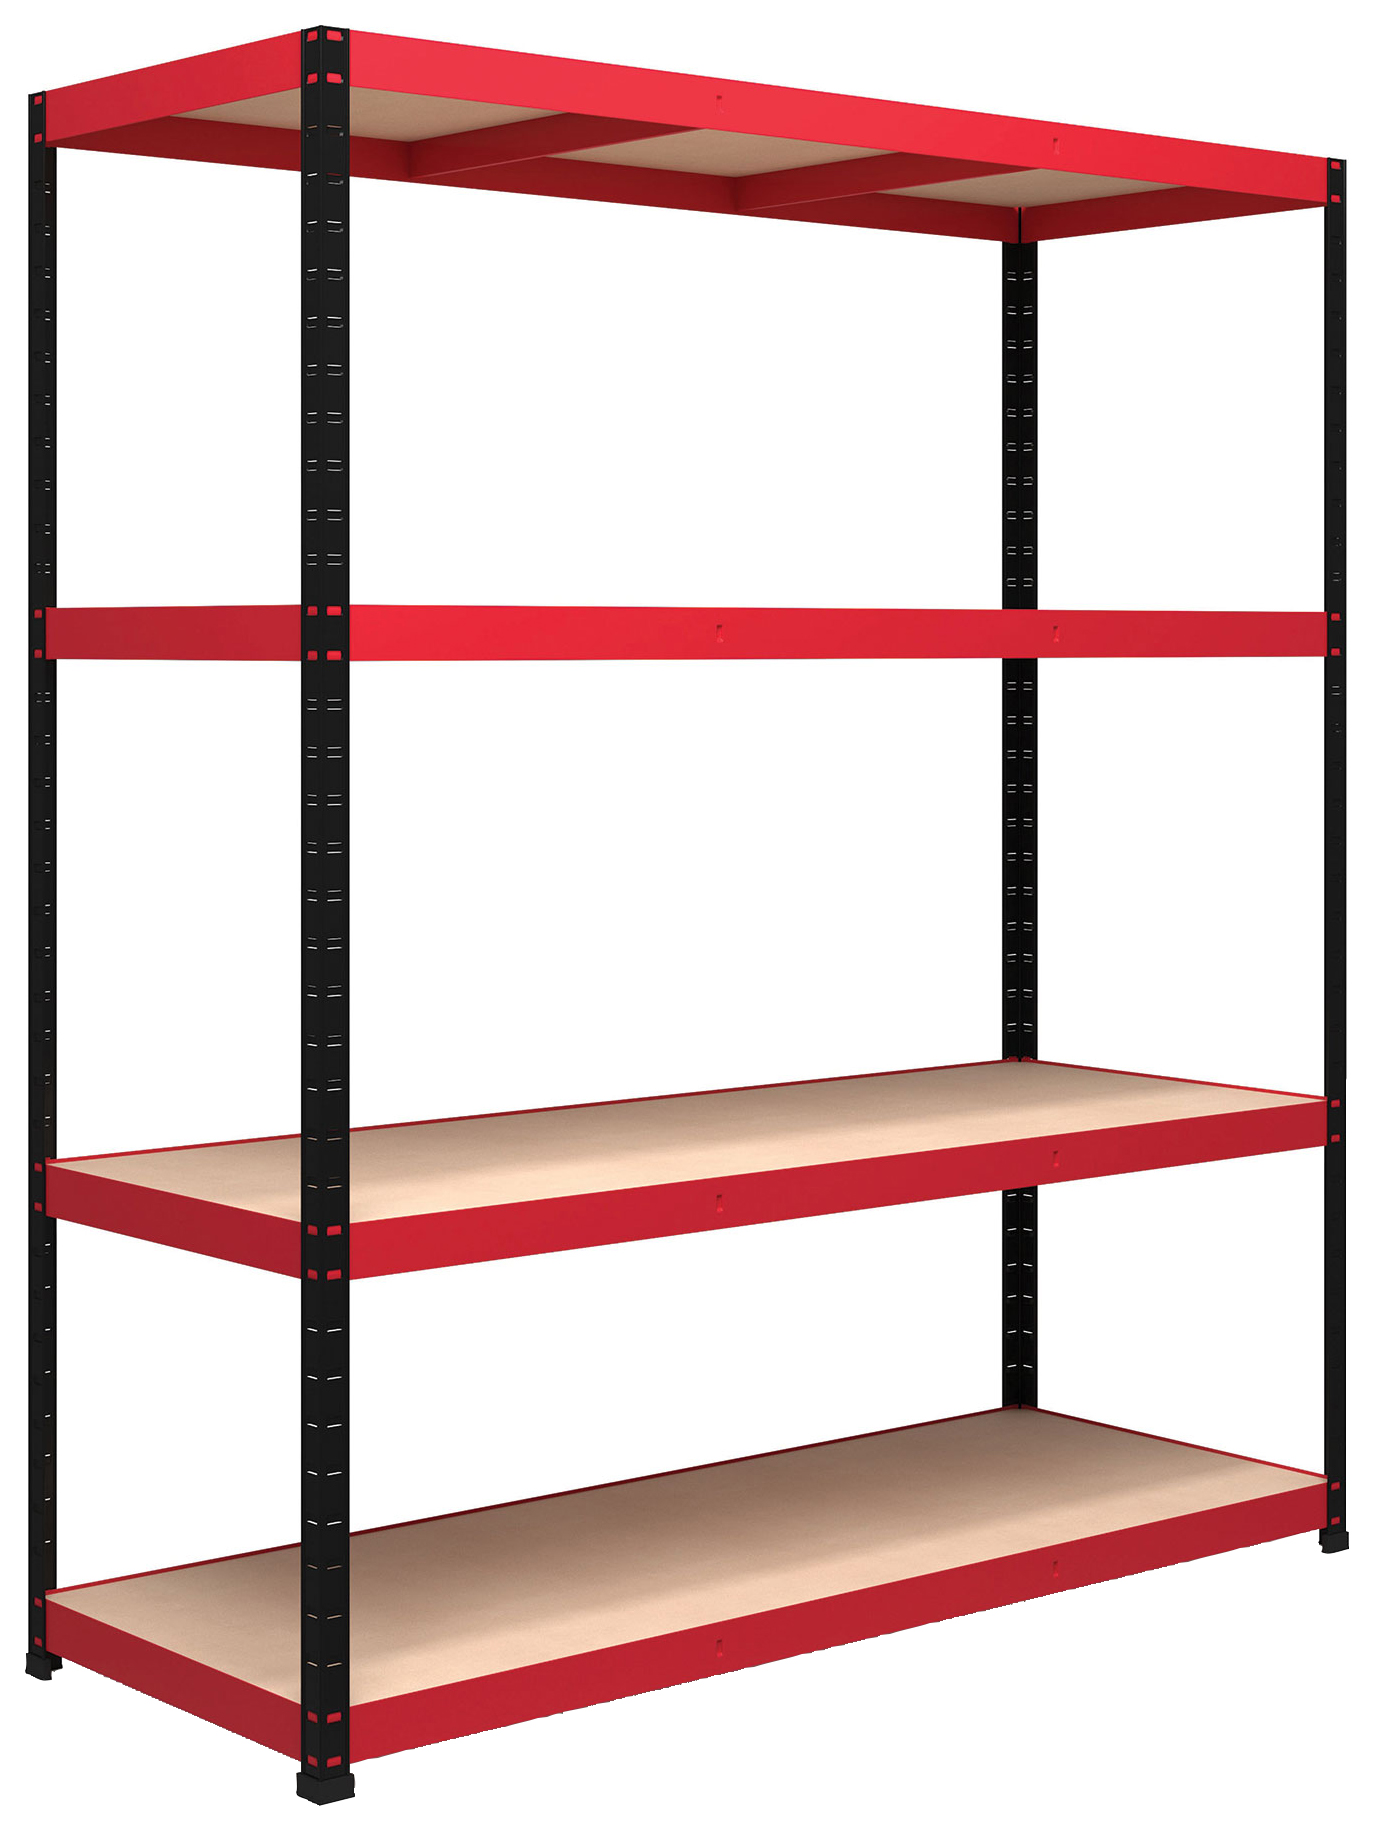 Image of Rb Boss Shelf Kit 4 Wood Shelves - 1800 x 1600 x 600mm 300kg Udl